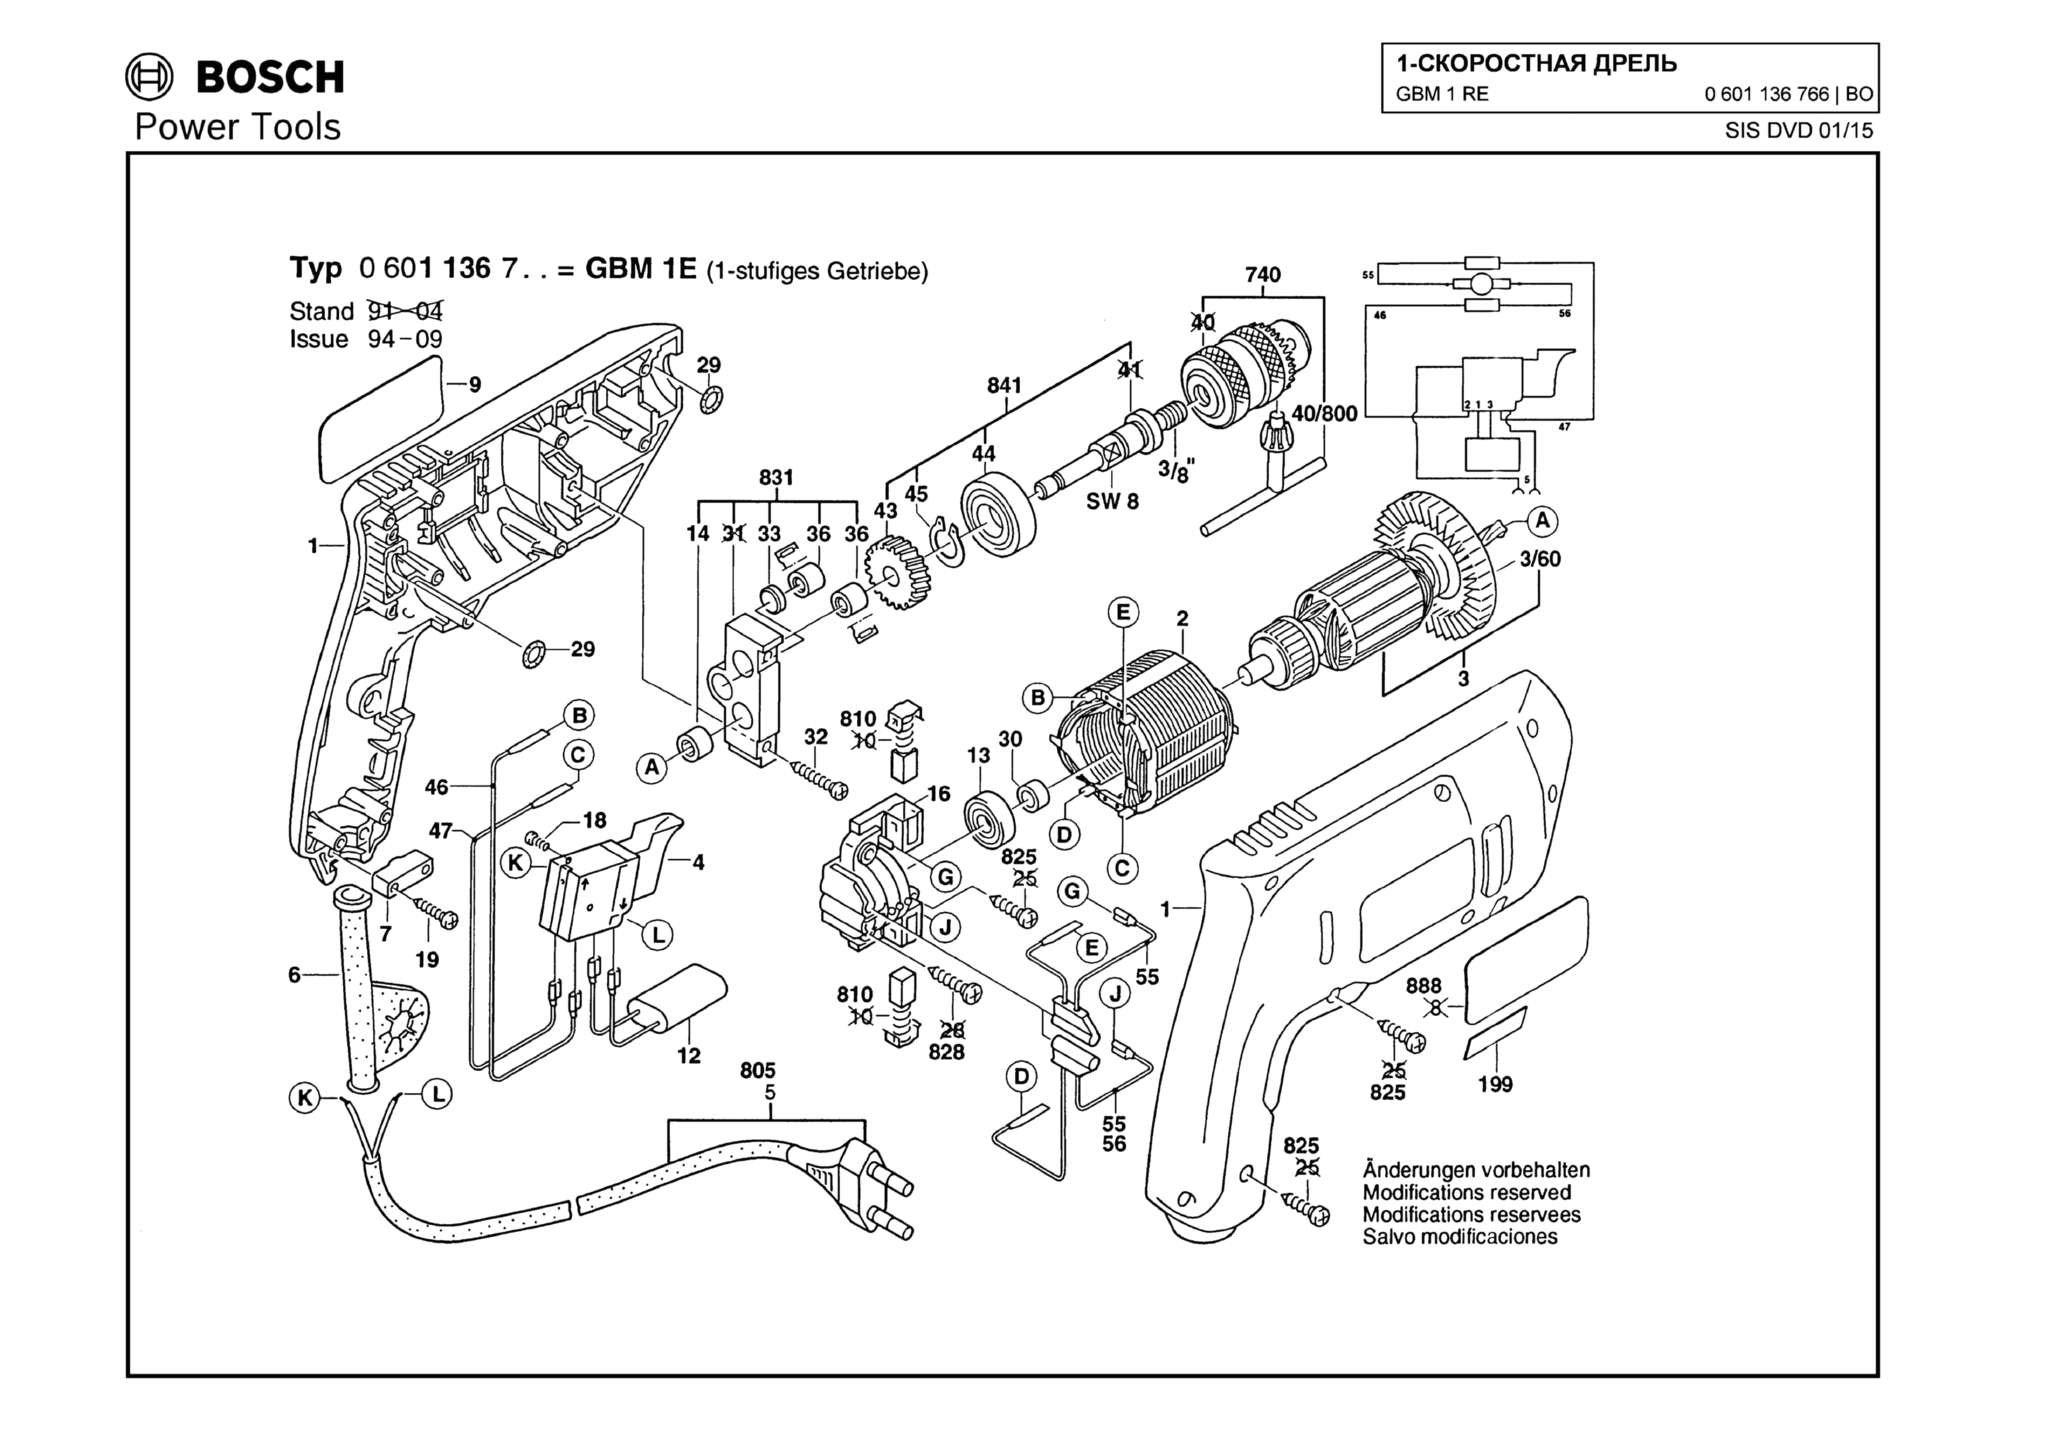 Запчасти, схема и деталировка Bosch GBM 1 RE (ТИП 0601136766)